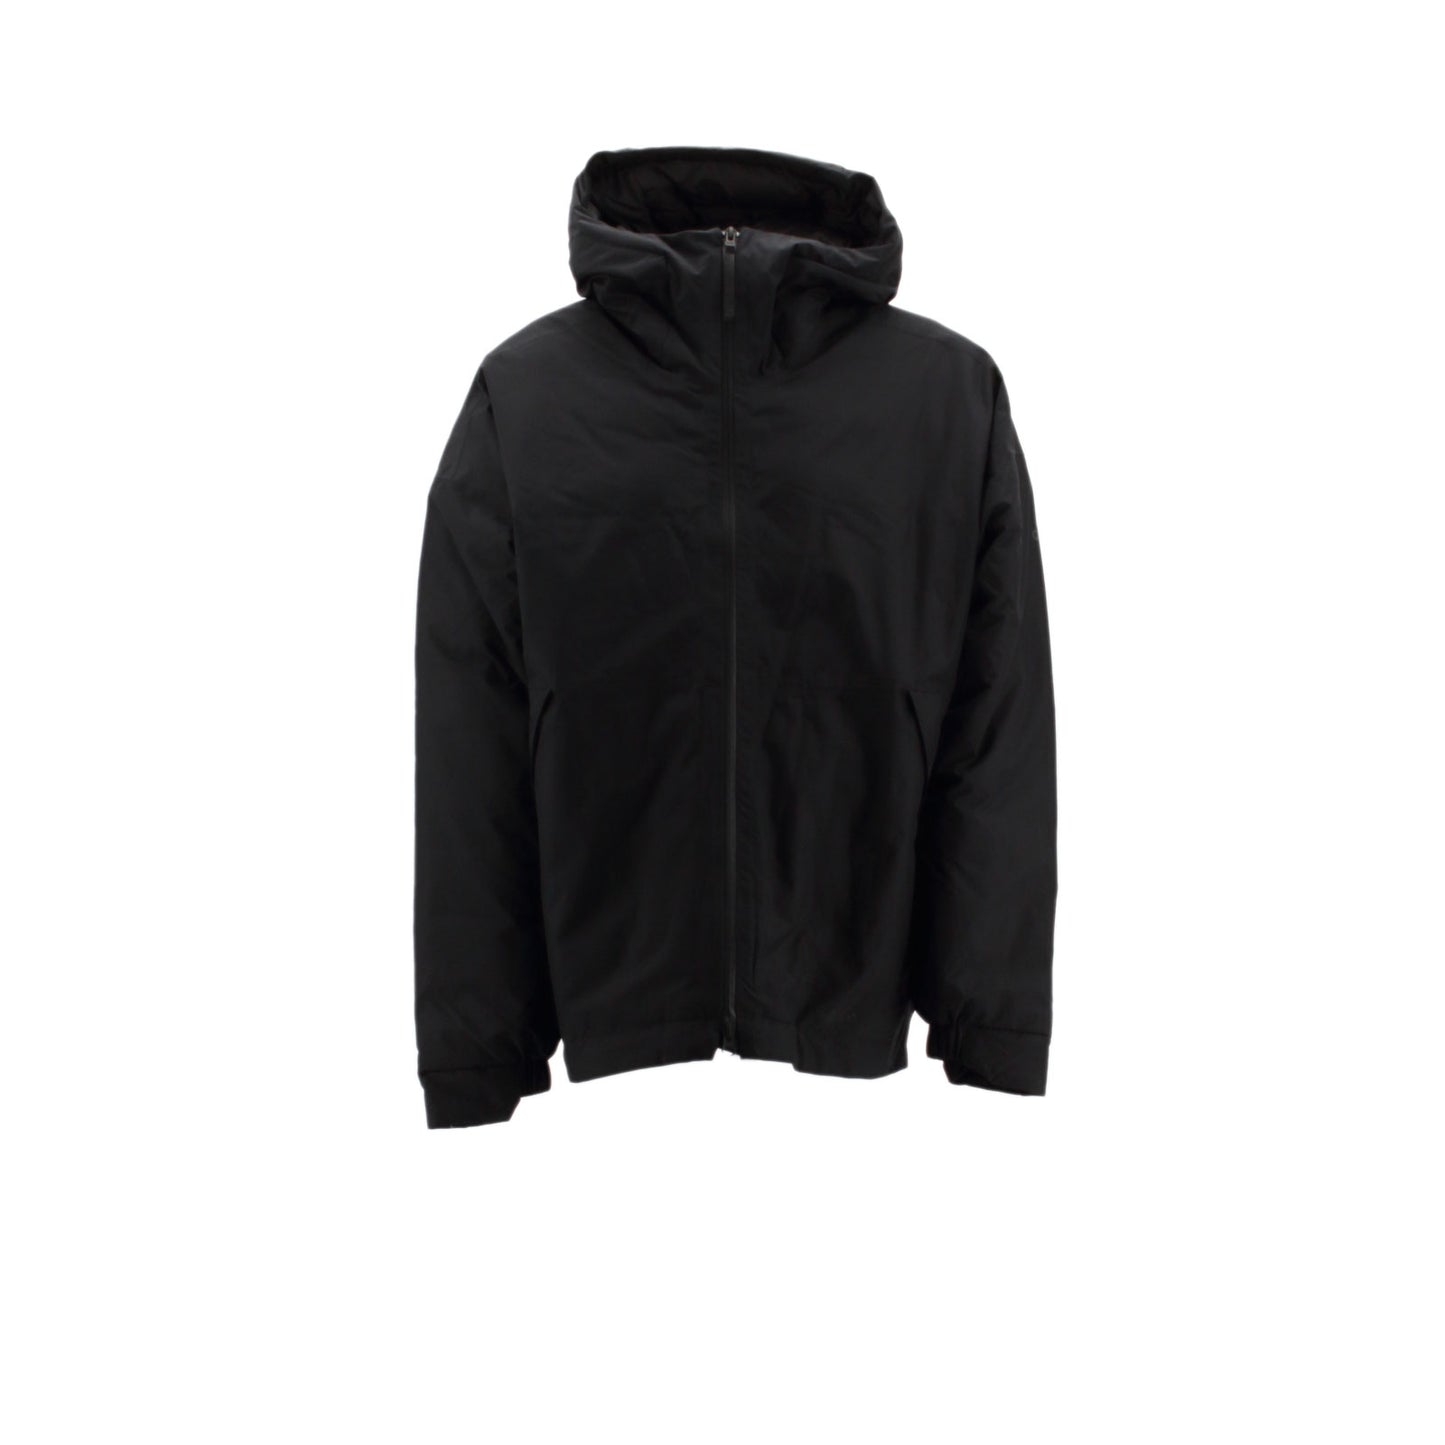 Adidas URBAN Insulated Rain Jacket Herren Winterjacke gefüttert schwarz DZ1397